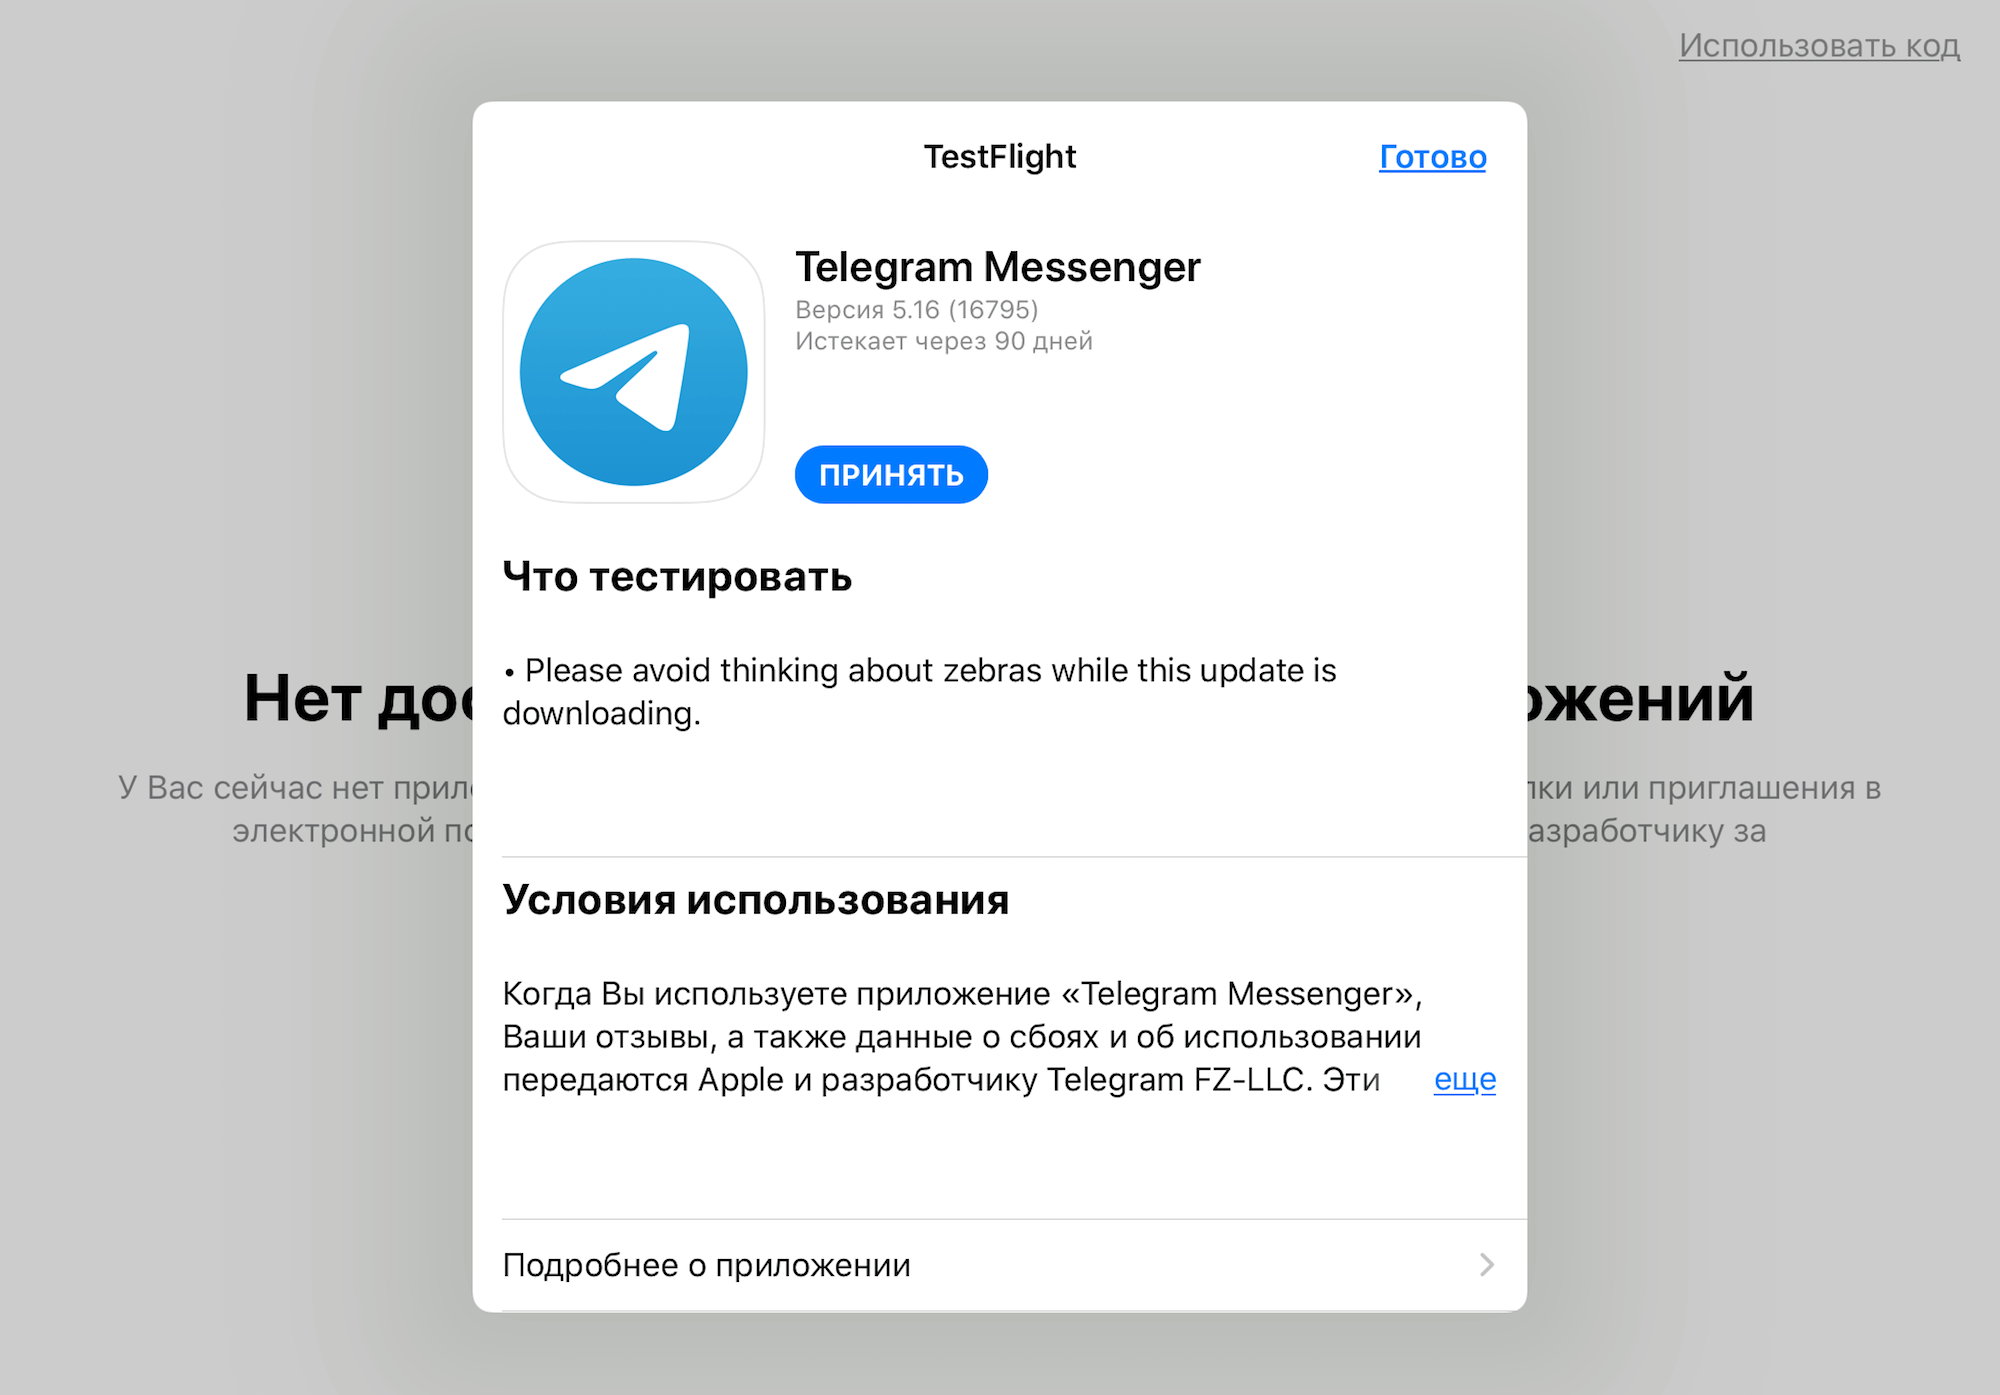 Сделать телеграмм на русском языке фото 45